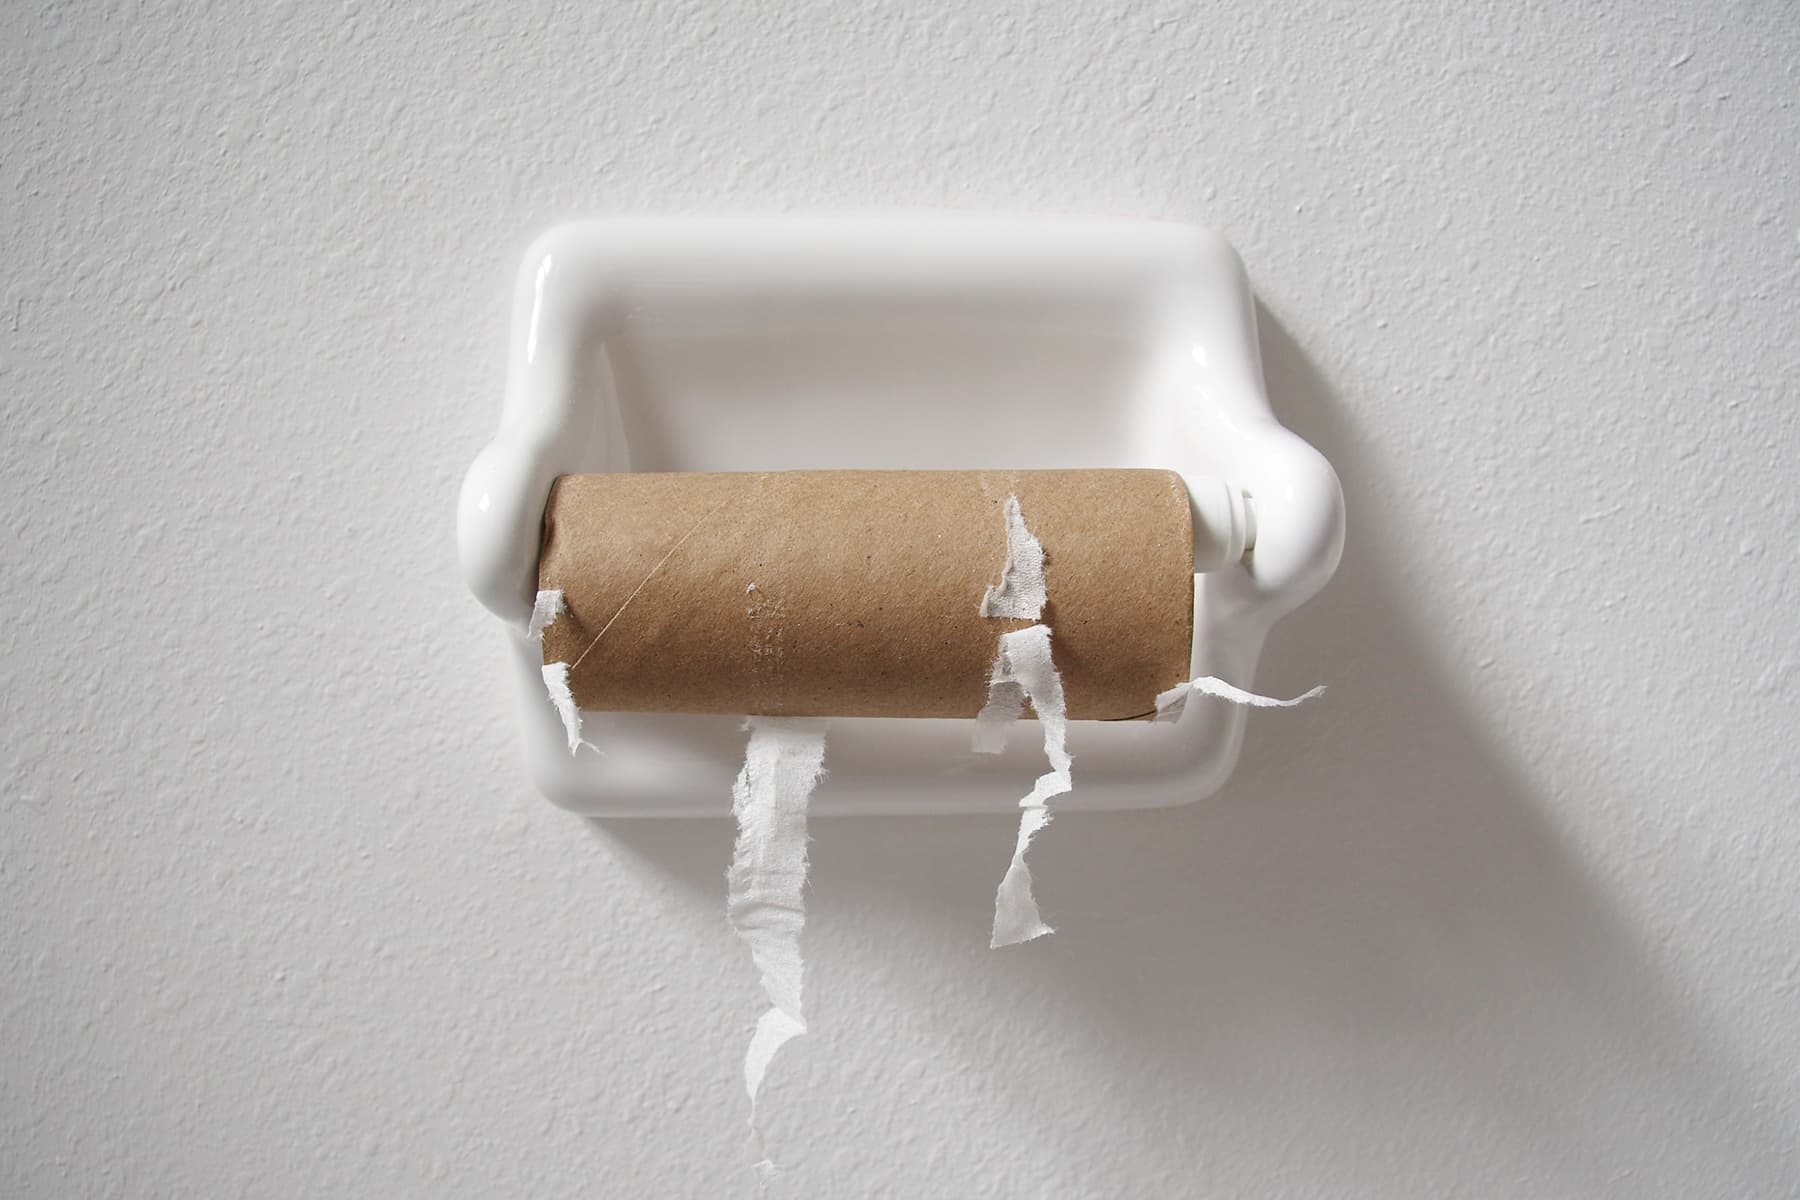 Panic-Buying Toilet Paper Is a Bad Habit We Can Break